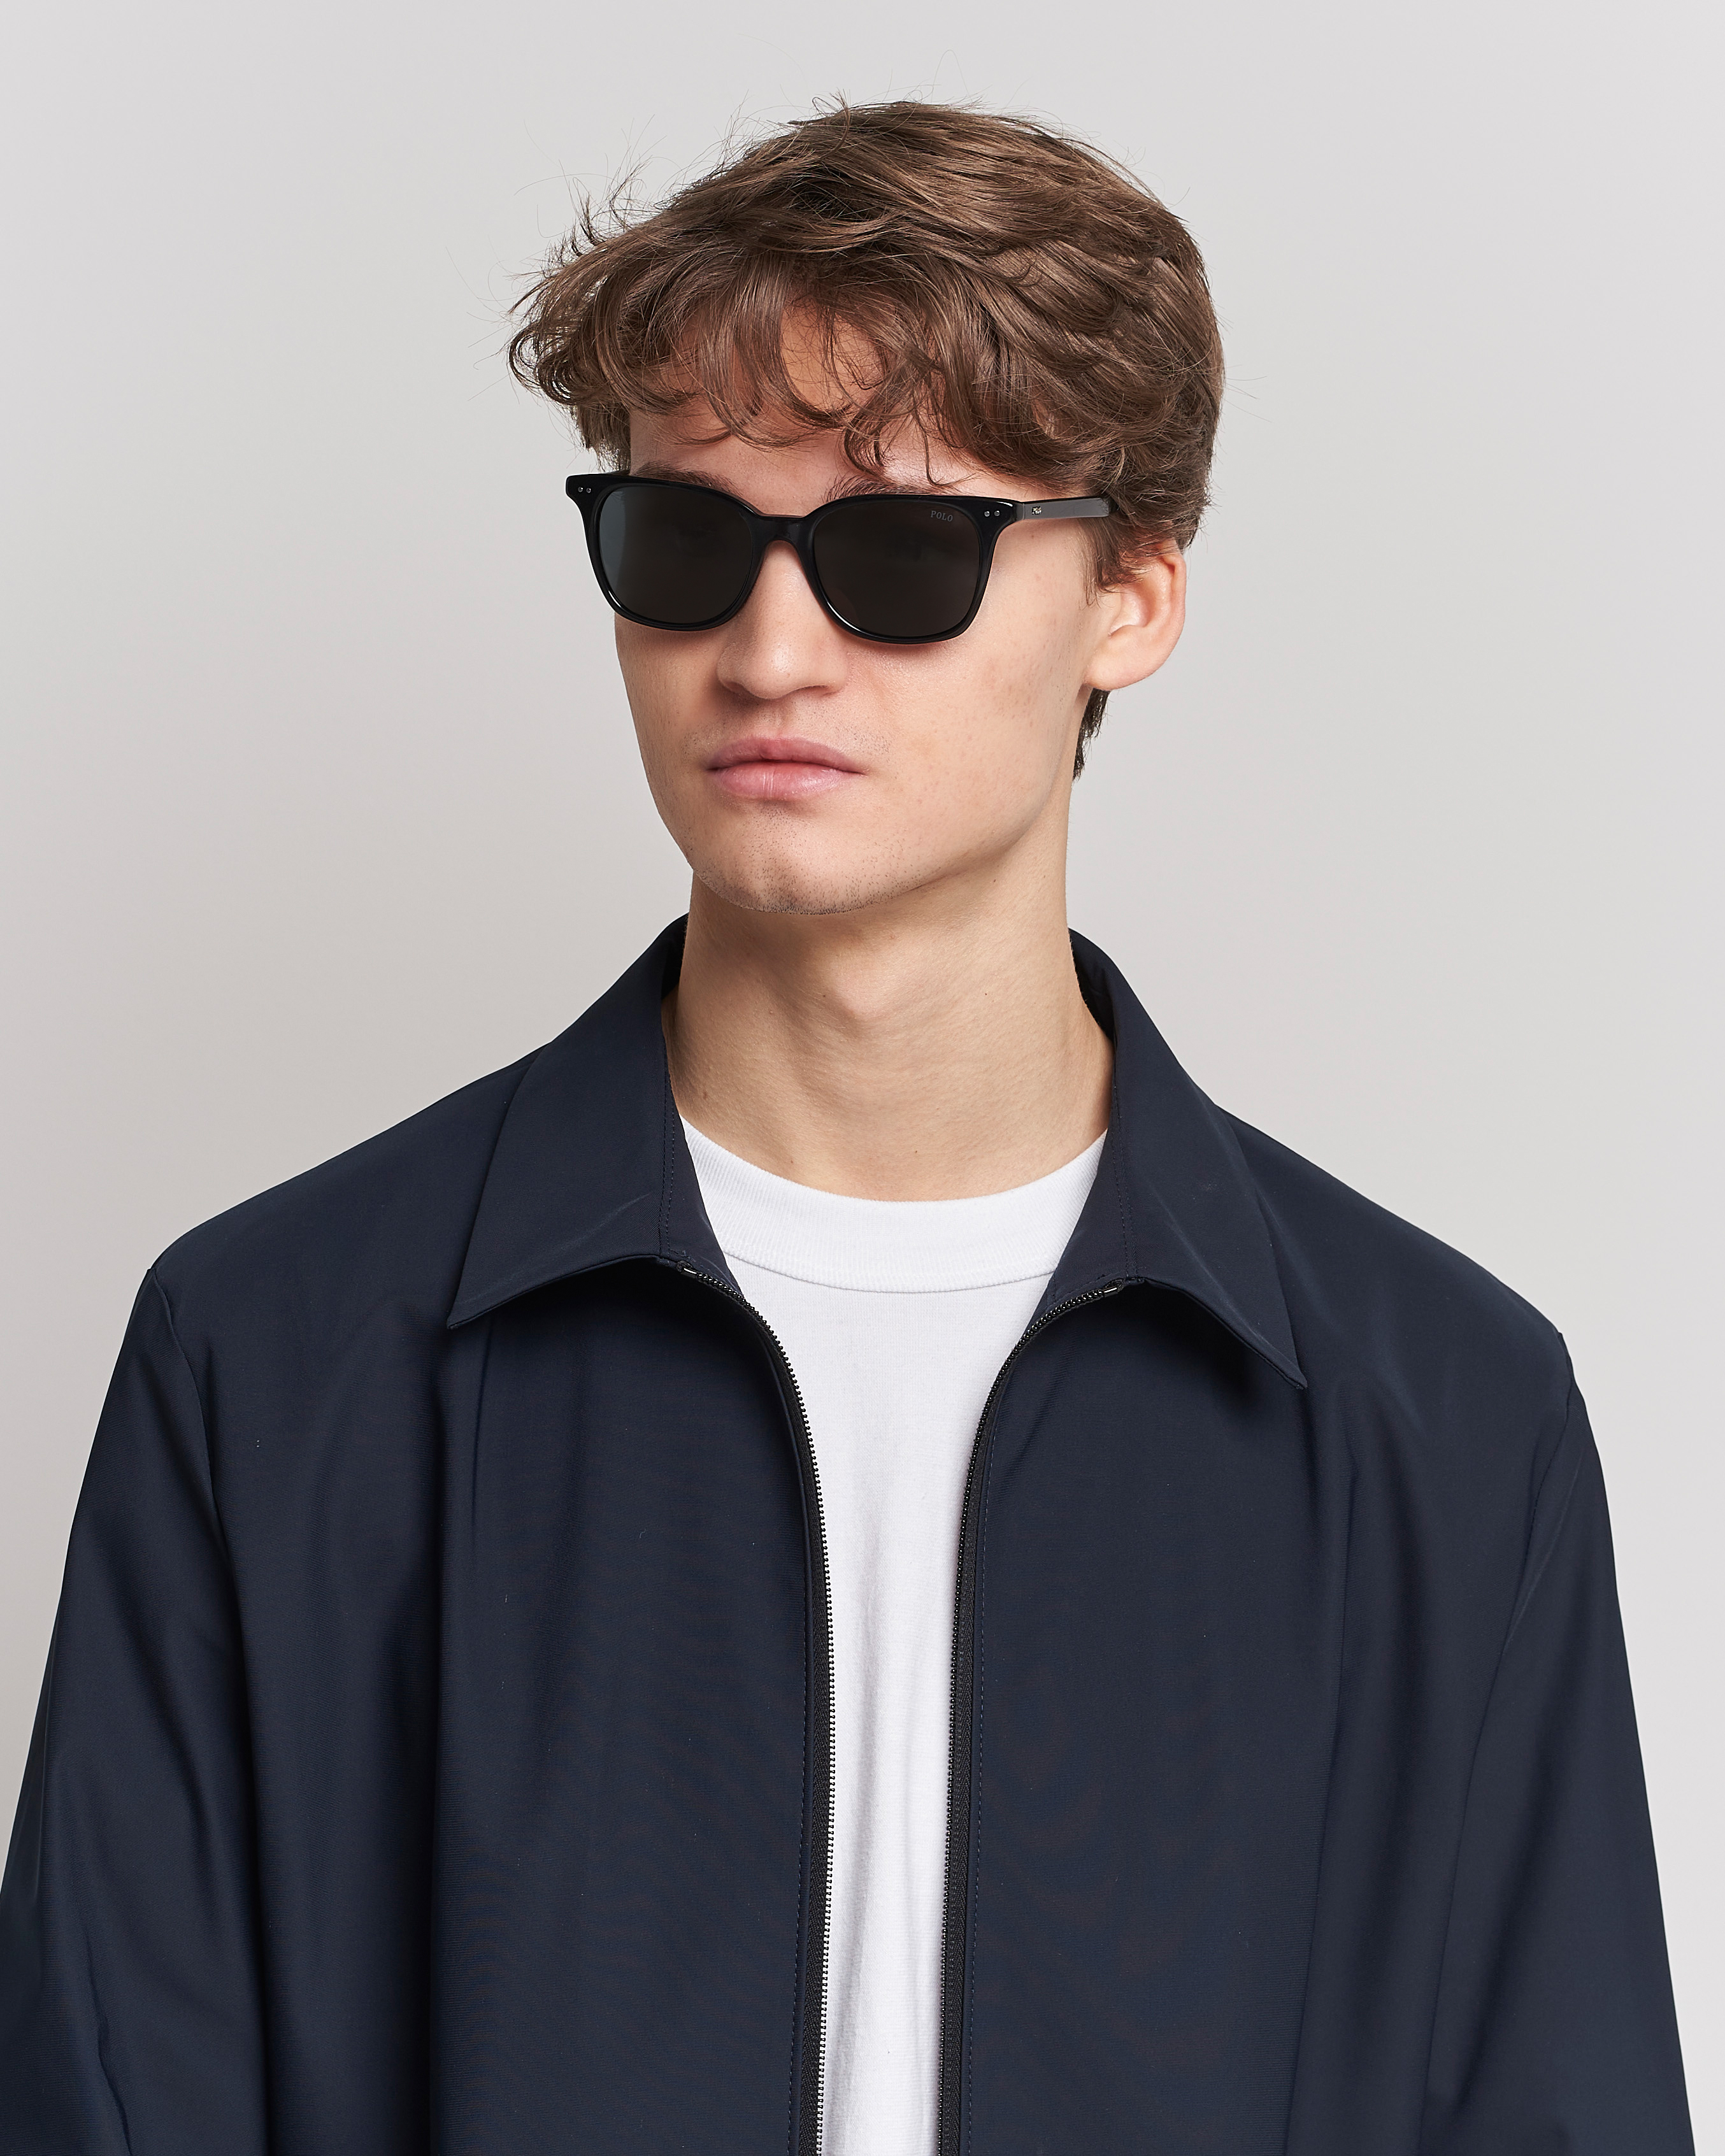 Herre | Assesoarer | Polo Ralph Lauren | 0PH4187 Sunglasses Shiny Black